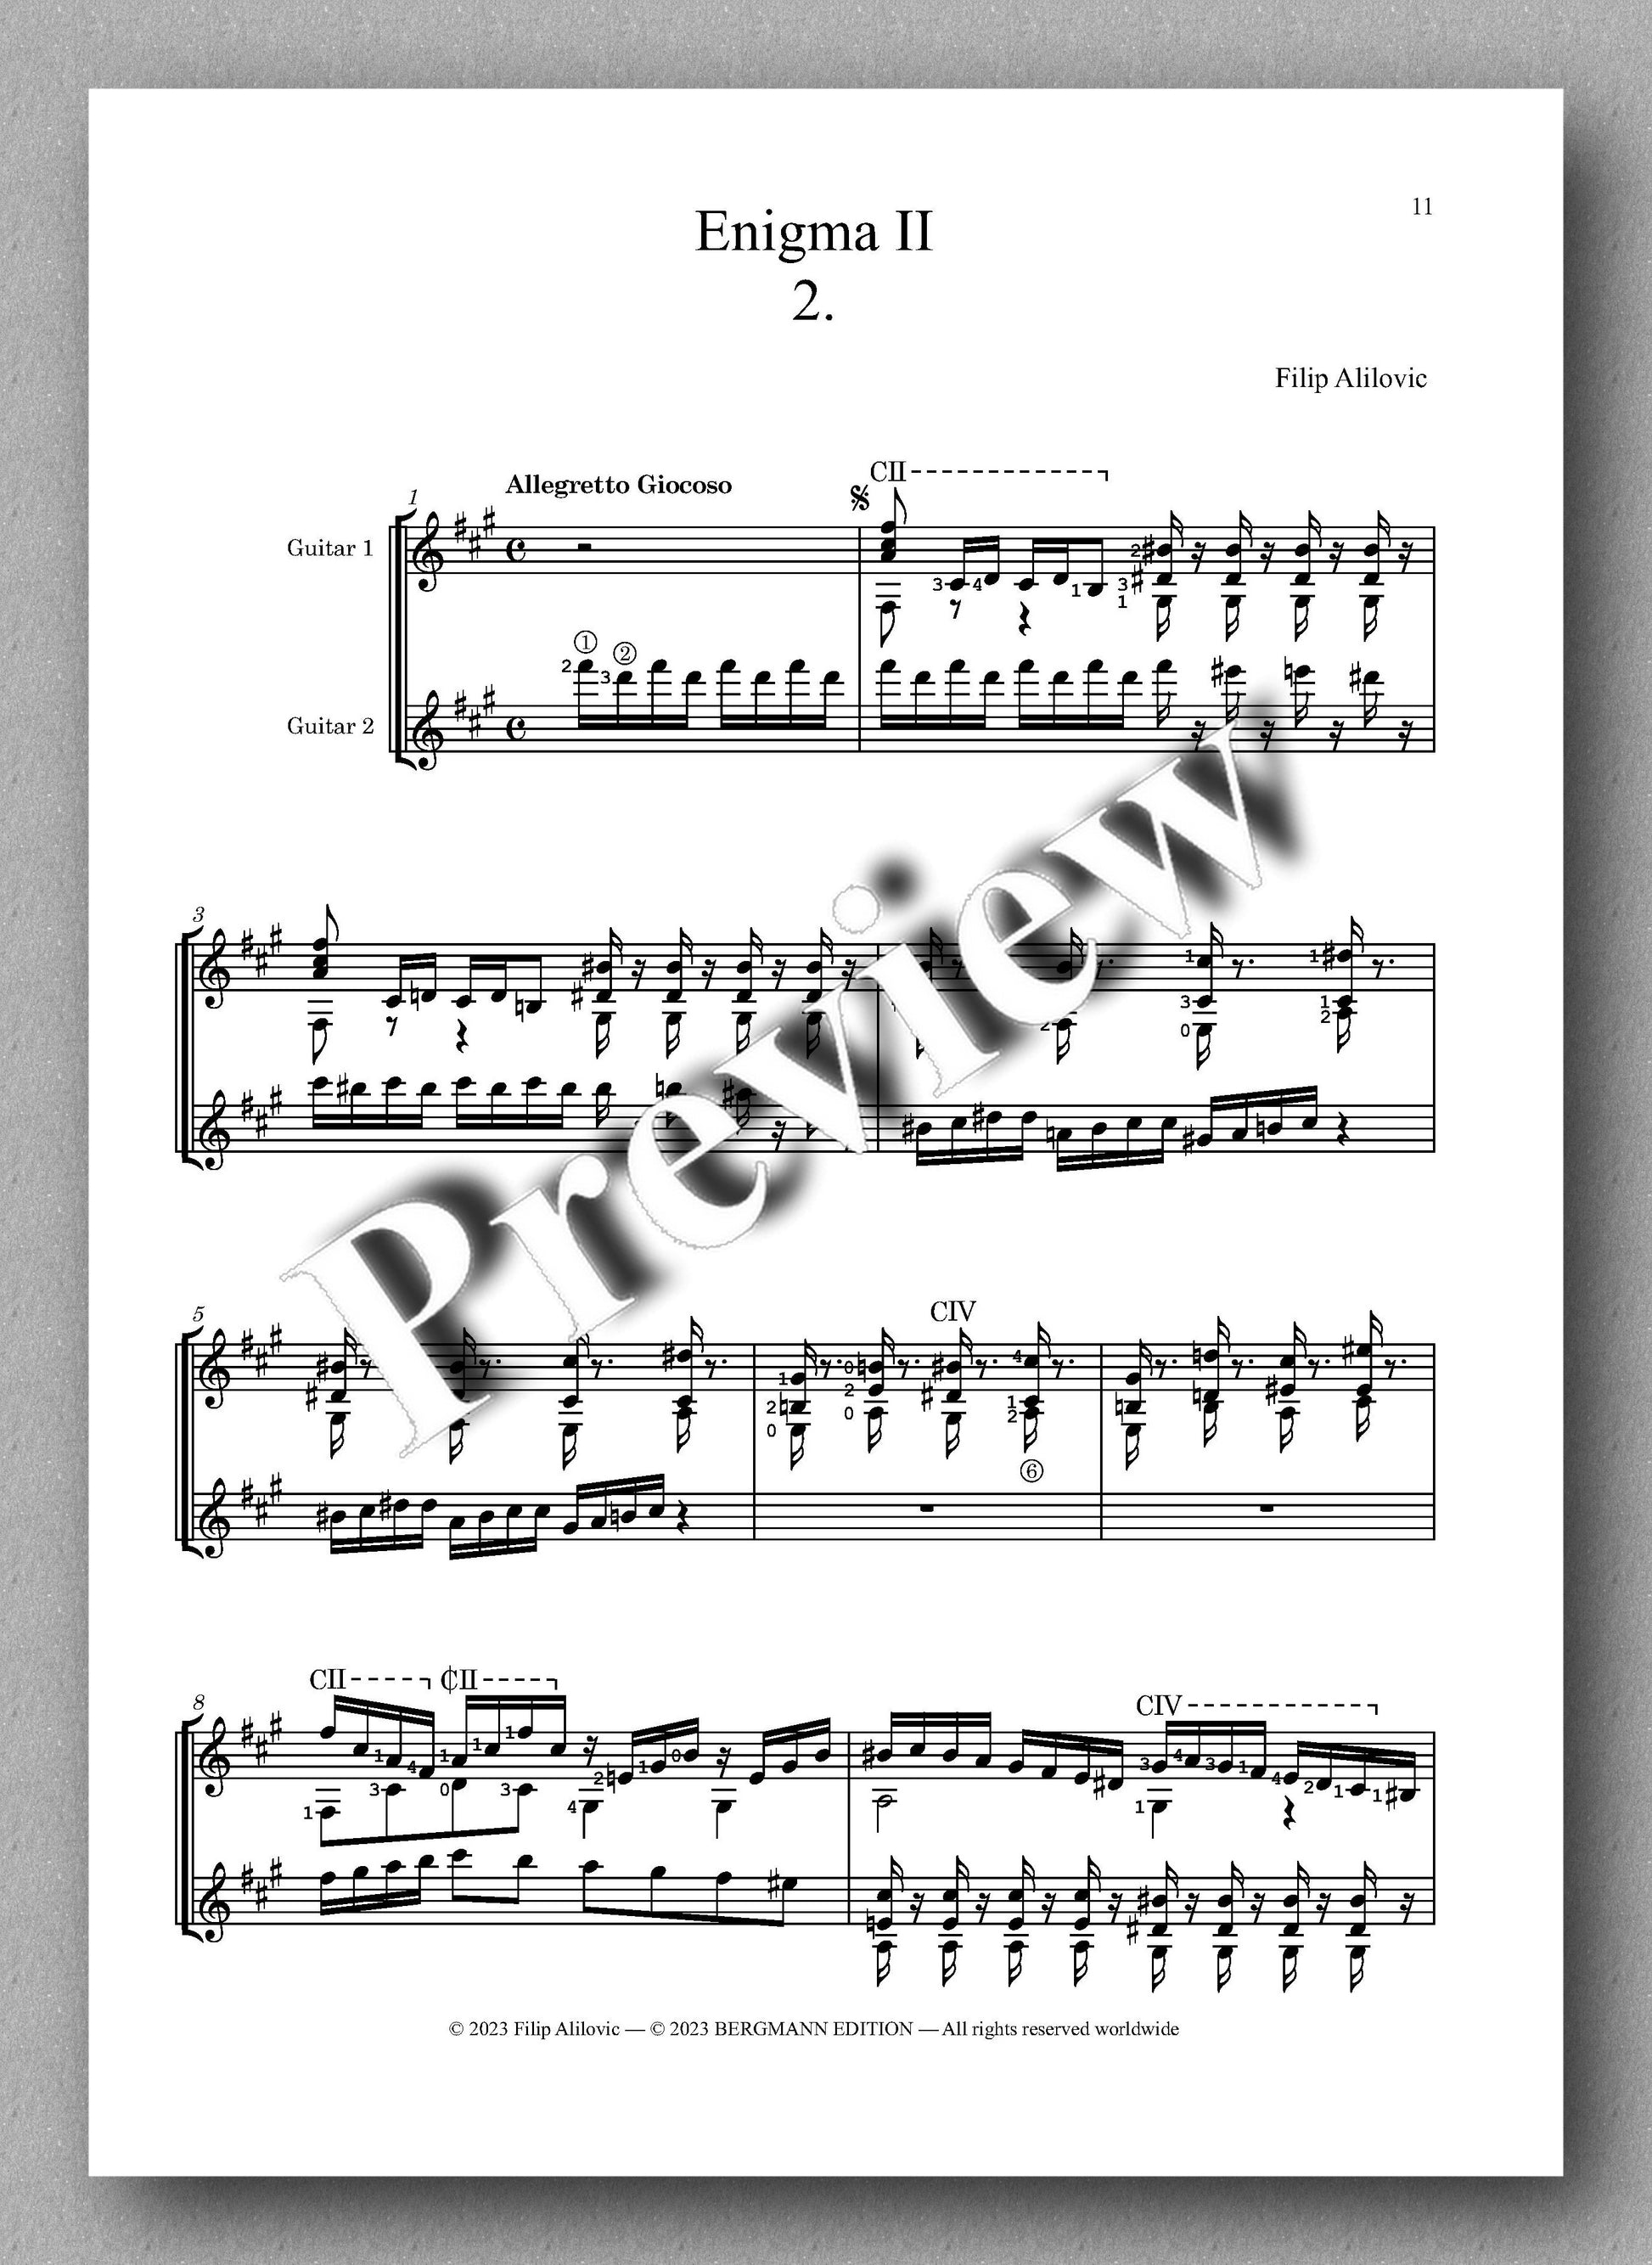 Filip Alilovic, Enigma II - preview of the music score 2